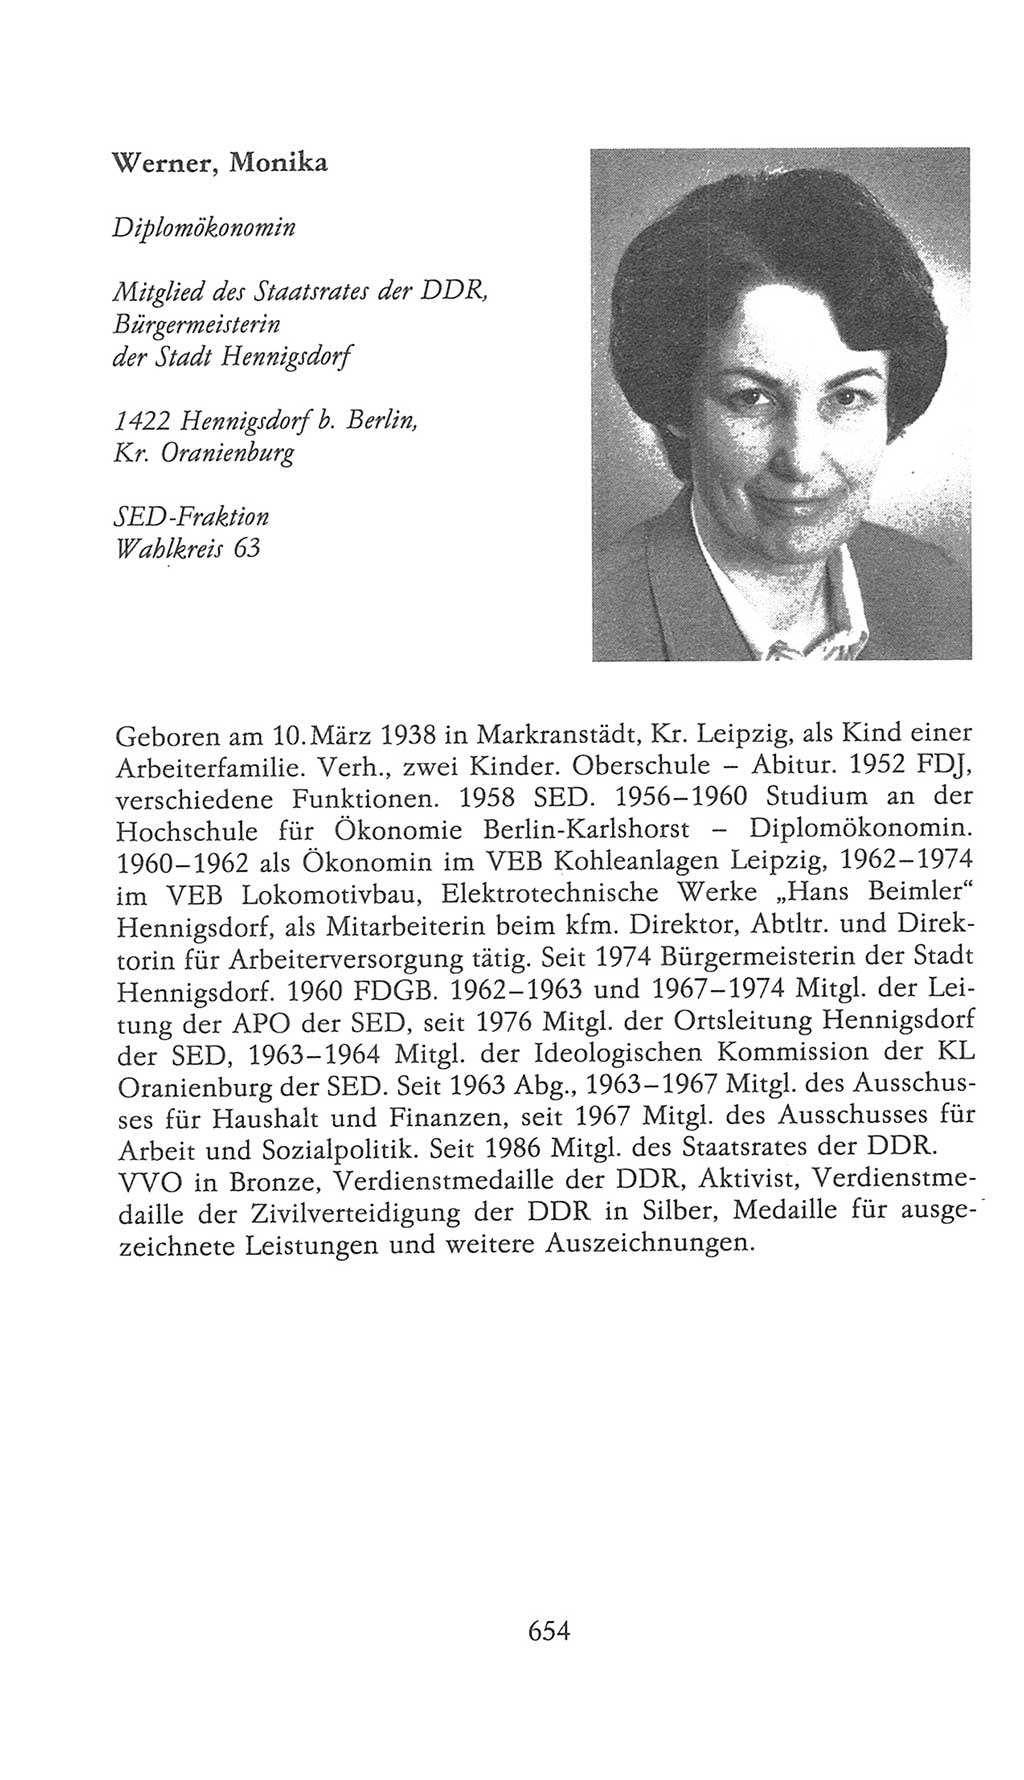 Volkskammer (VK) der Deutschen Demokratischen Republik (DDR), 9. Wahlperiode 1986-1990, Seite 654 (VK. DDR 9. WP. 1986-1990, S. 654)